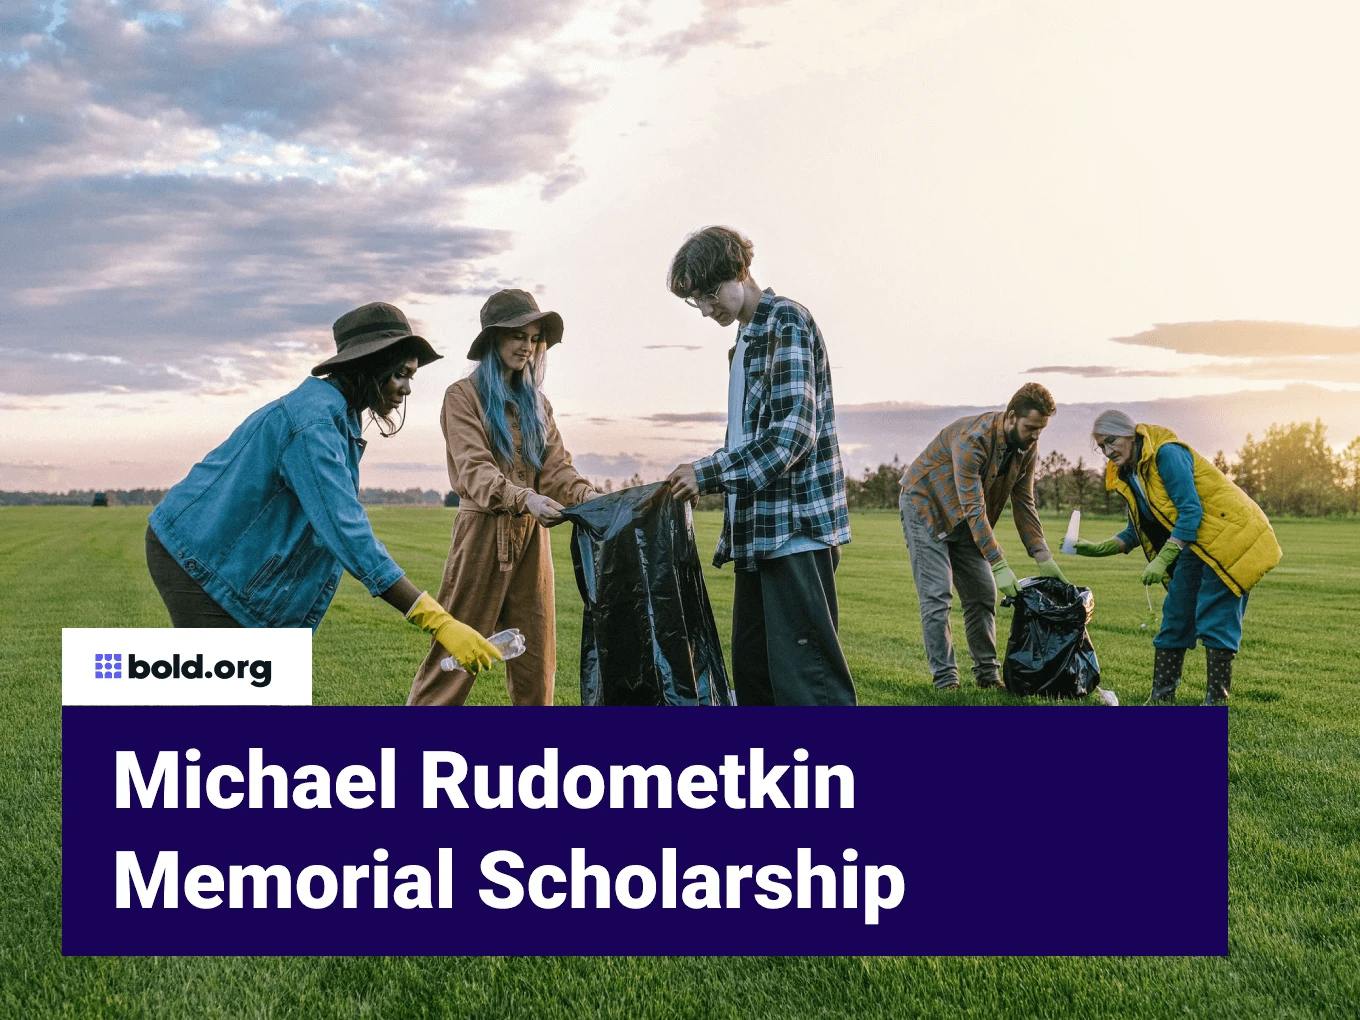 Michael Rudometkin Memorial Scholarship